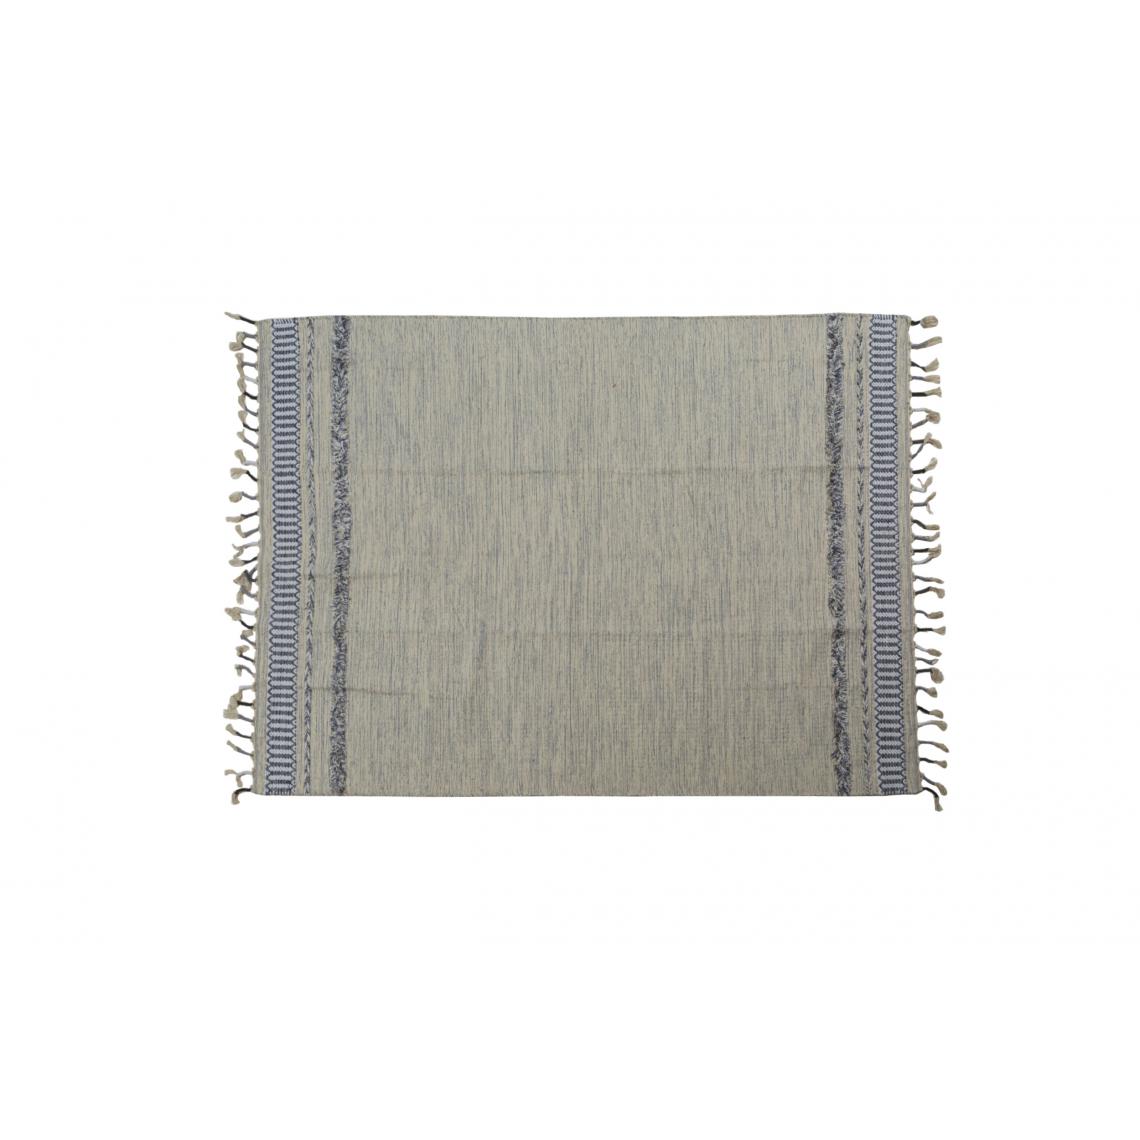 Alter - Tapis boston moderne, style kilim, 100% coton, gris, 110x60cm - Tapis